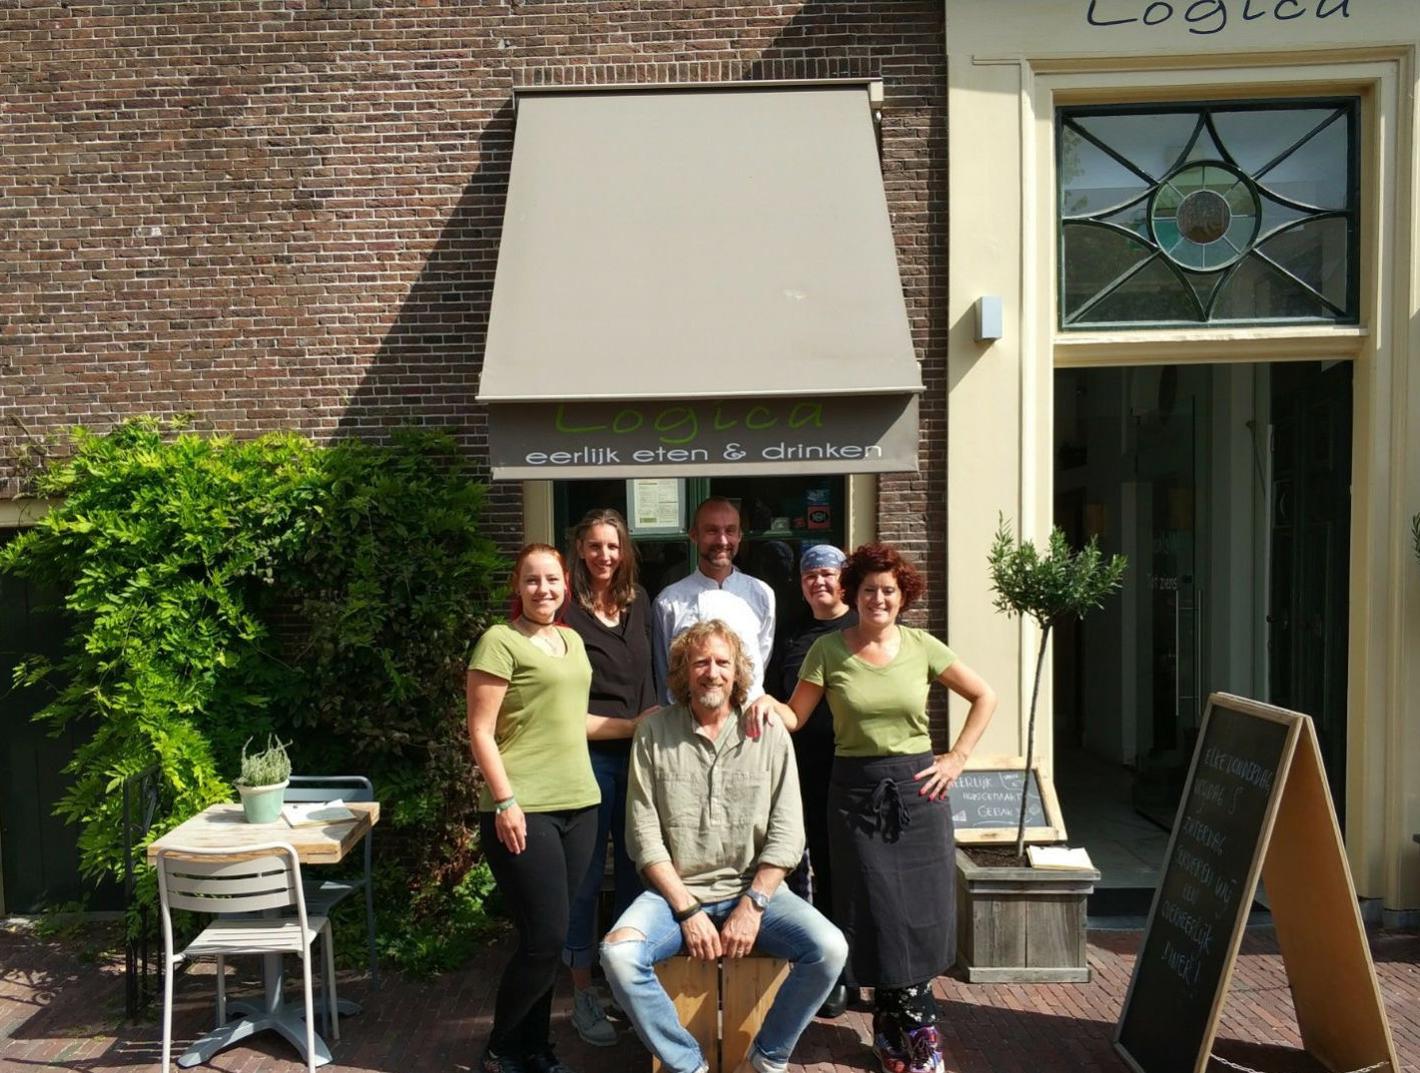 Foto Restaurant Logica in Leiden, Essen & Trinken, Genieße ein köstliches mittagessen, Viel spaß beim abendessen - #1